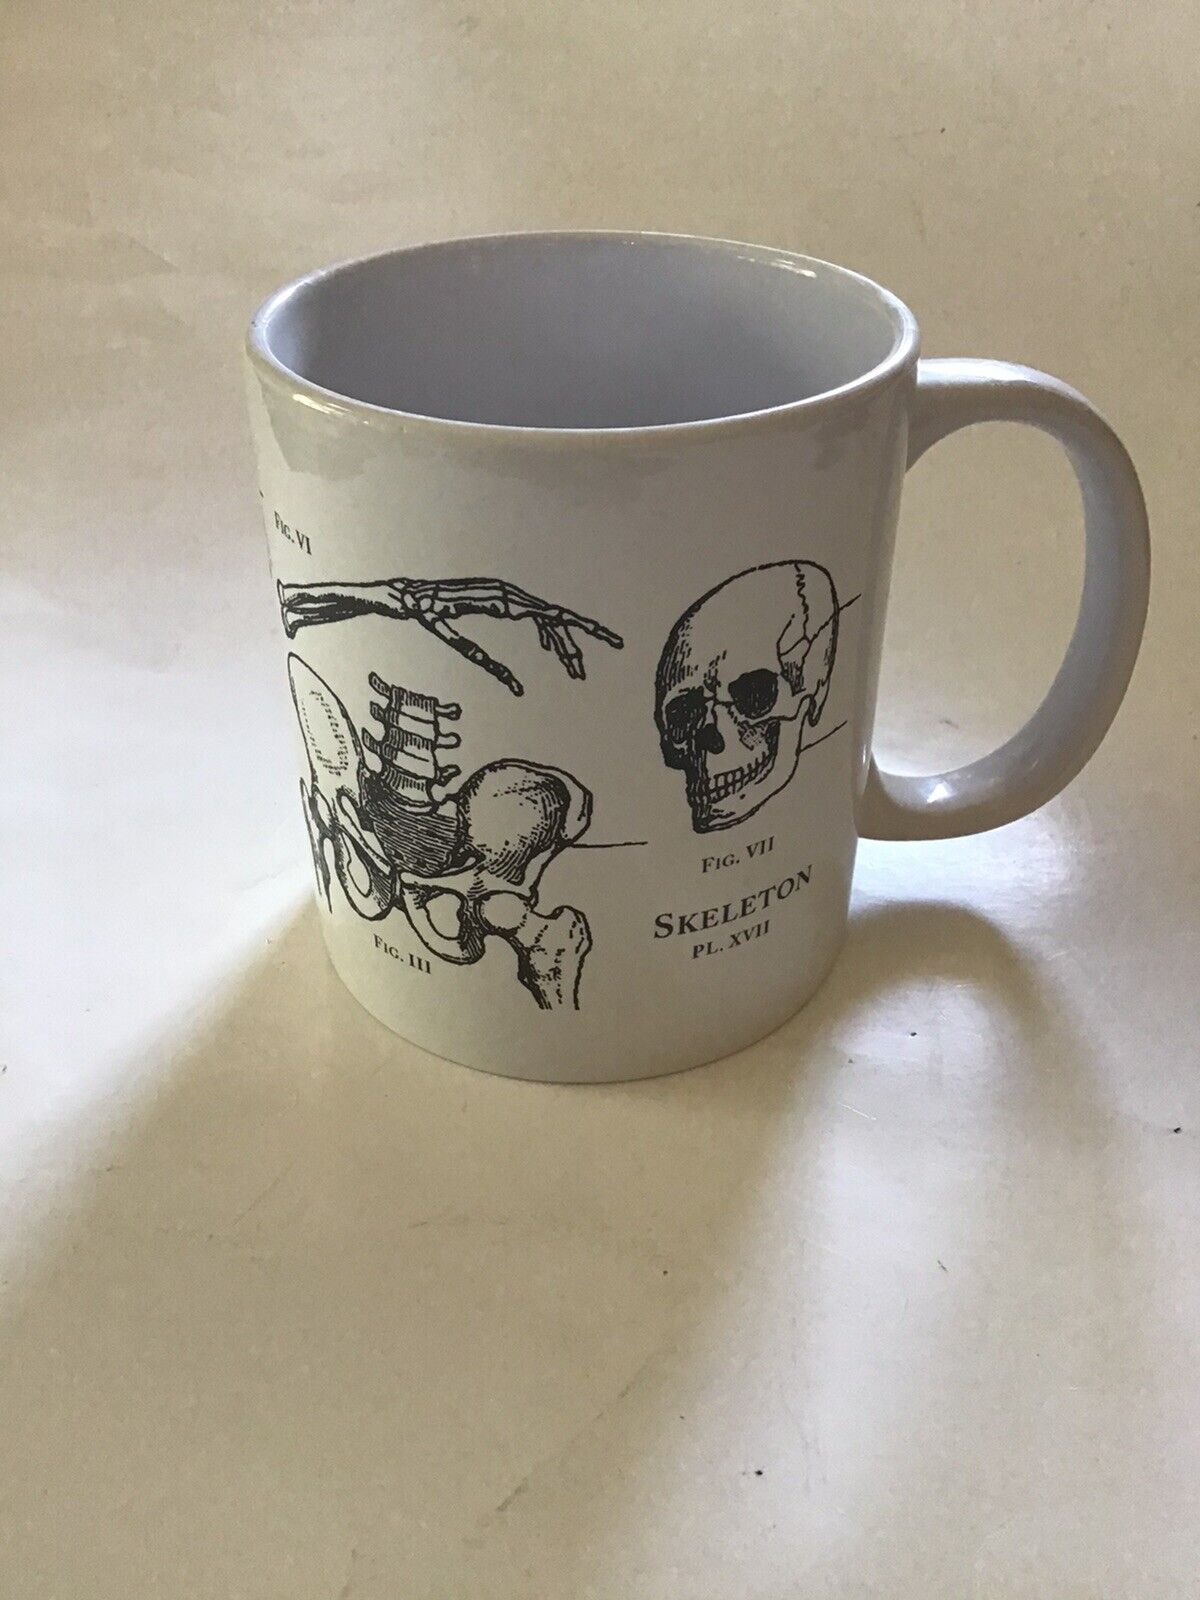 Human Anatomy large Mug Cup Skeleton bones drawing white with black design